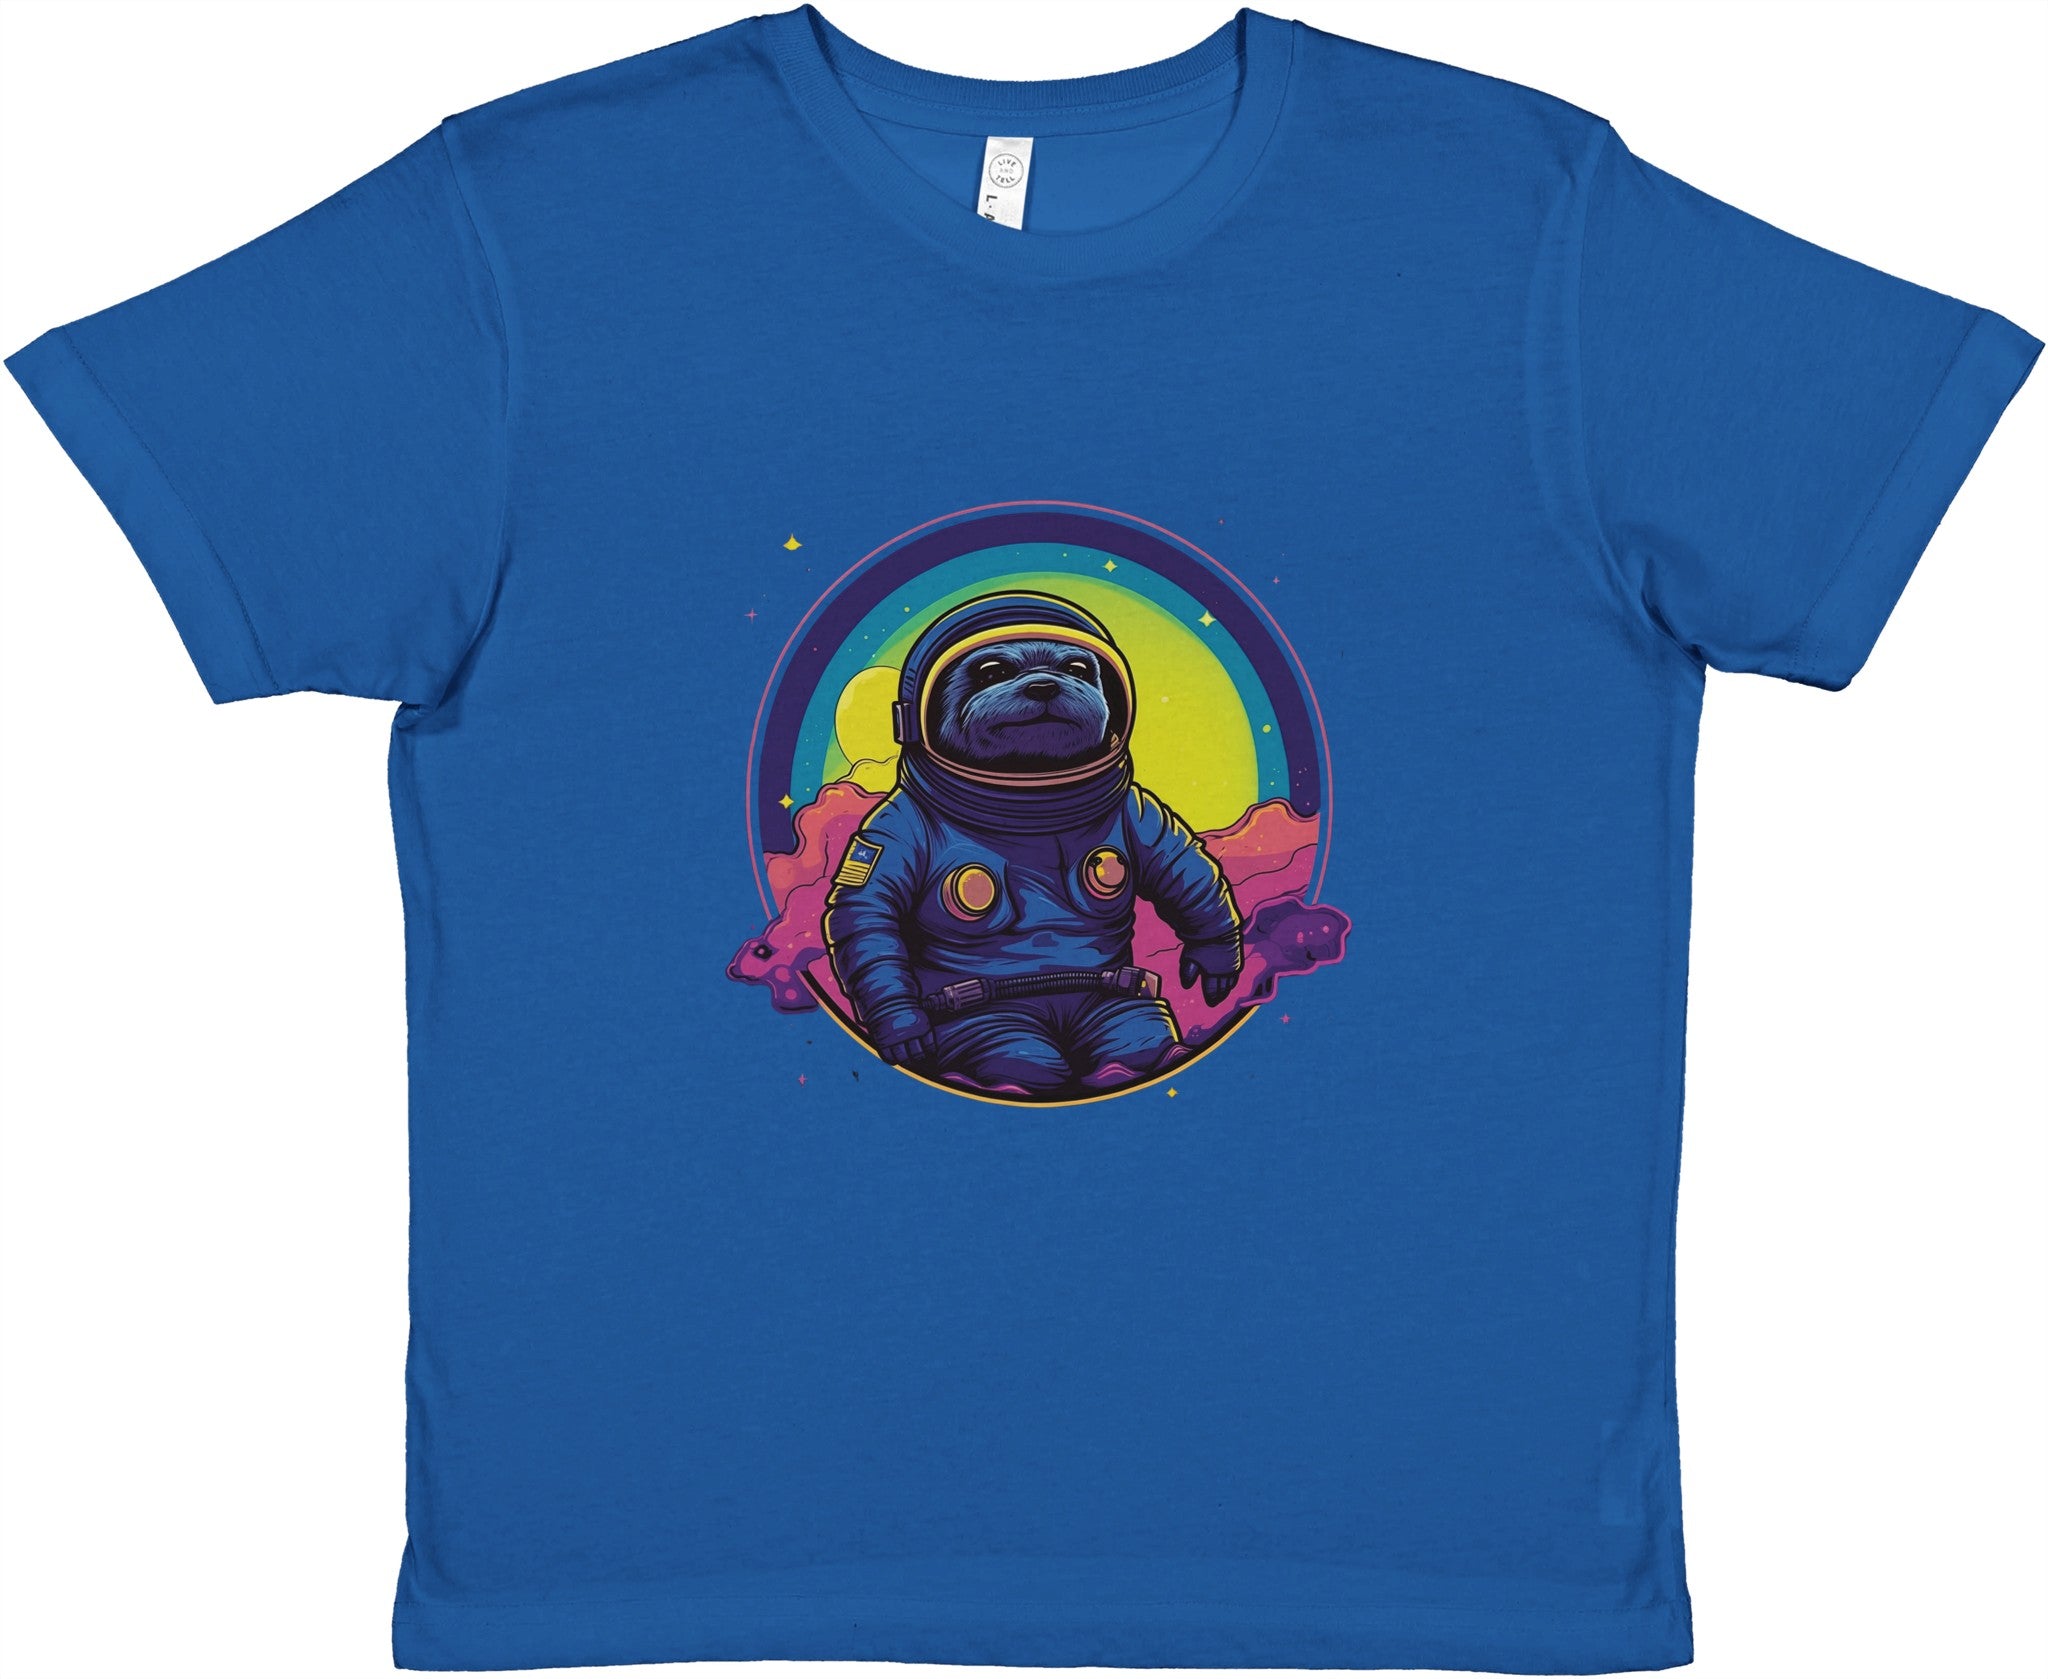 Cosmic Sloth Astronaut Kids Crewneck T-shirt - Optimalprint